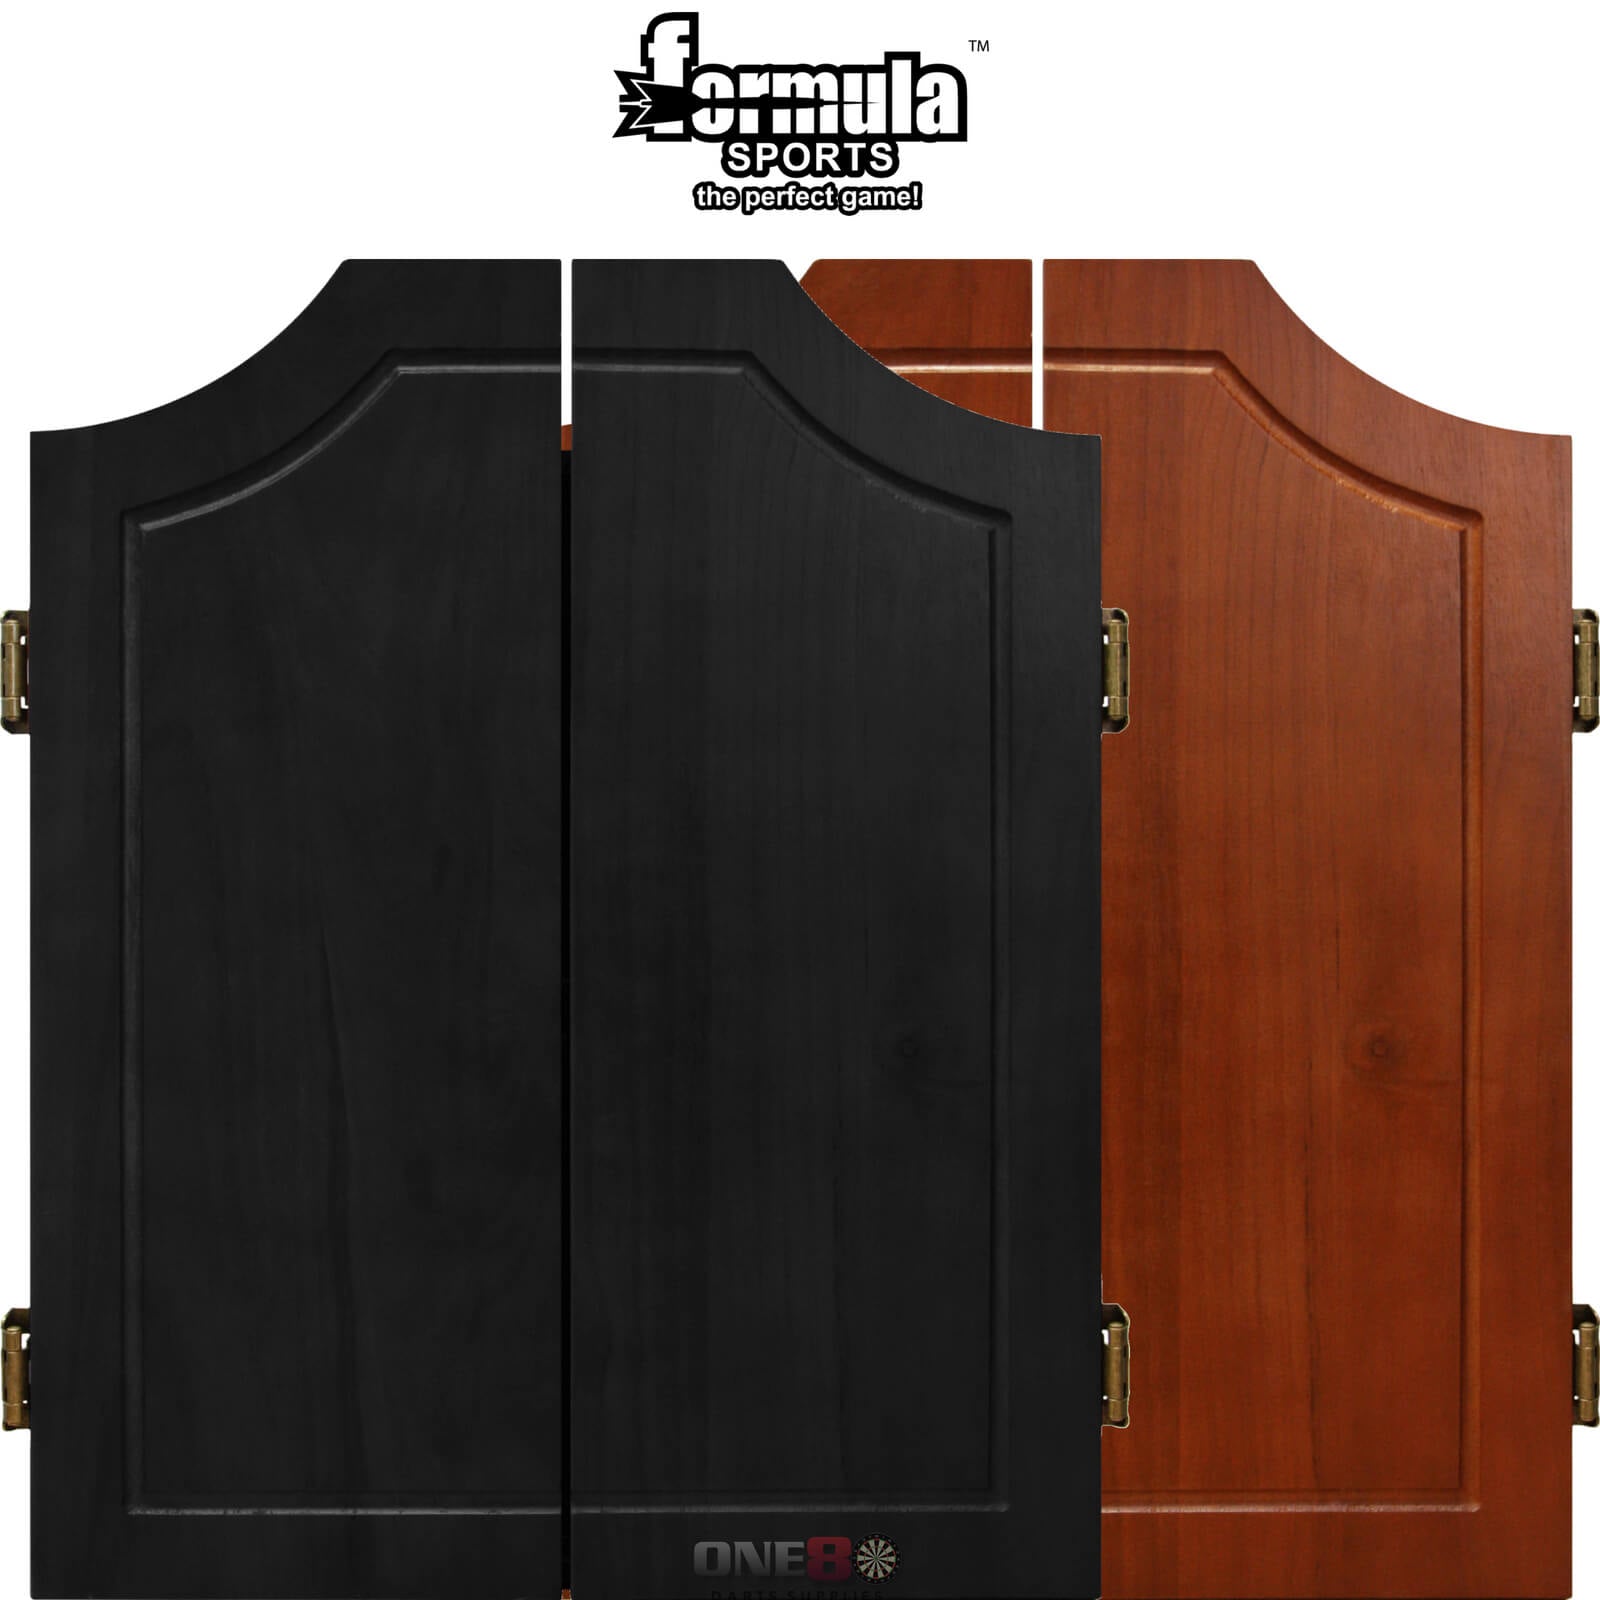 Dartboard Accessories - Formula Sports - Solid Wood Dartboard Cabinet - Black, Walnut 